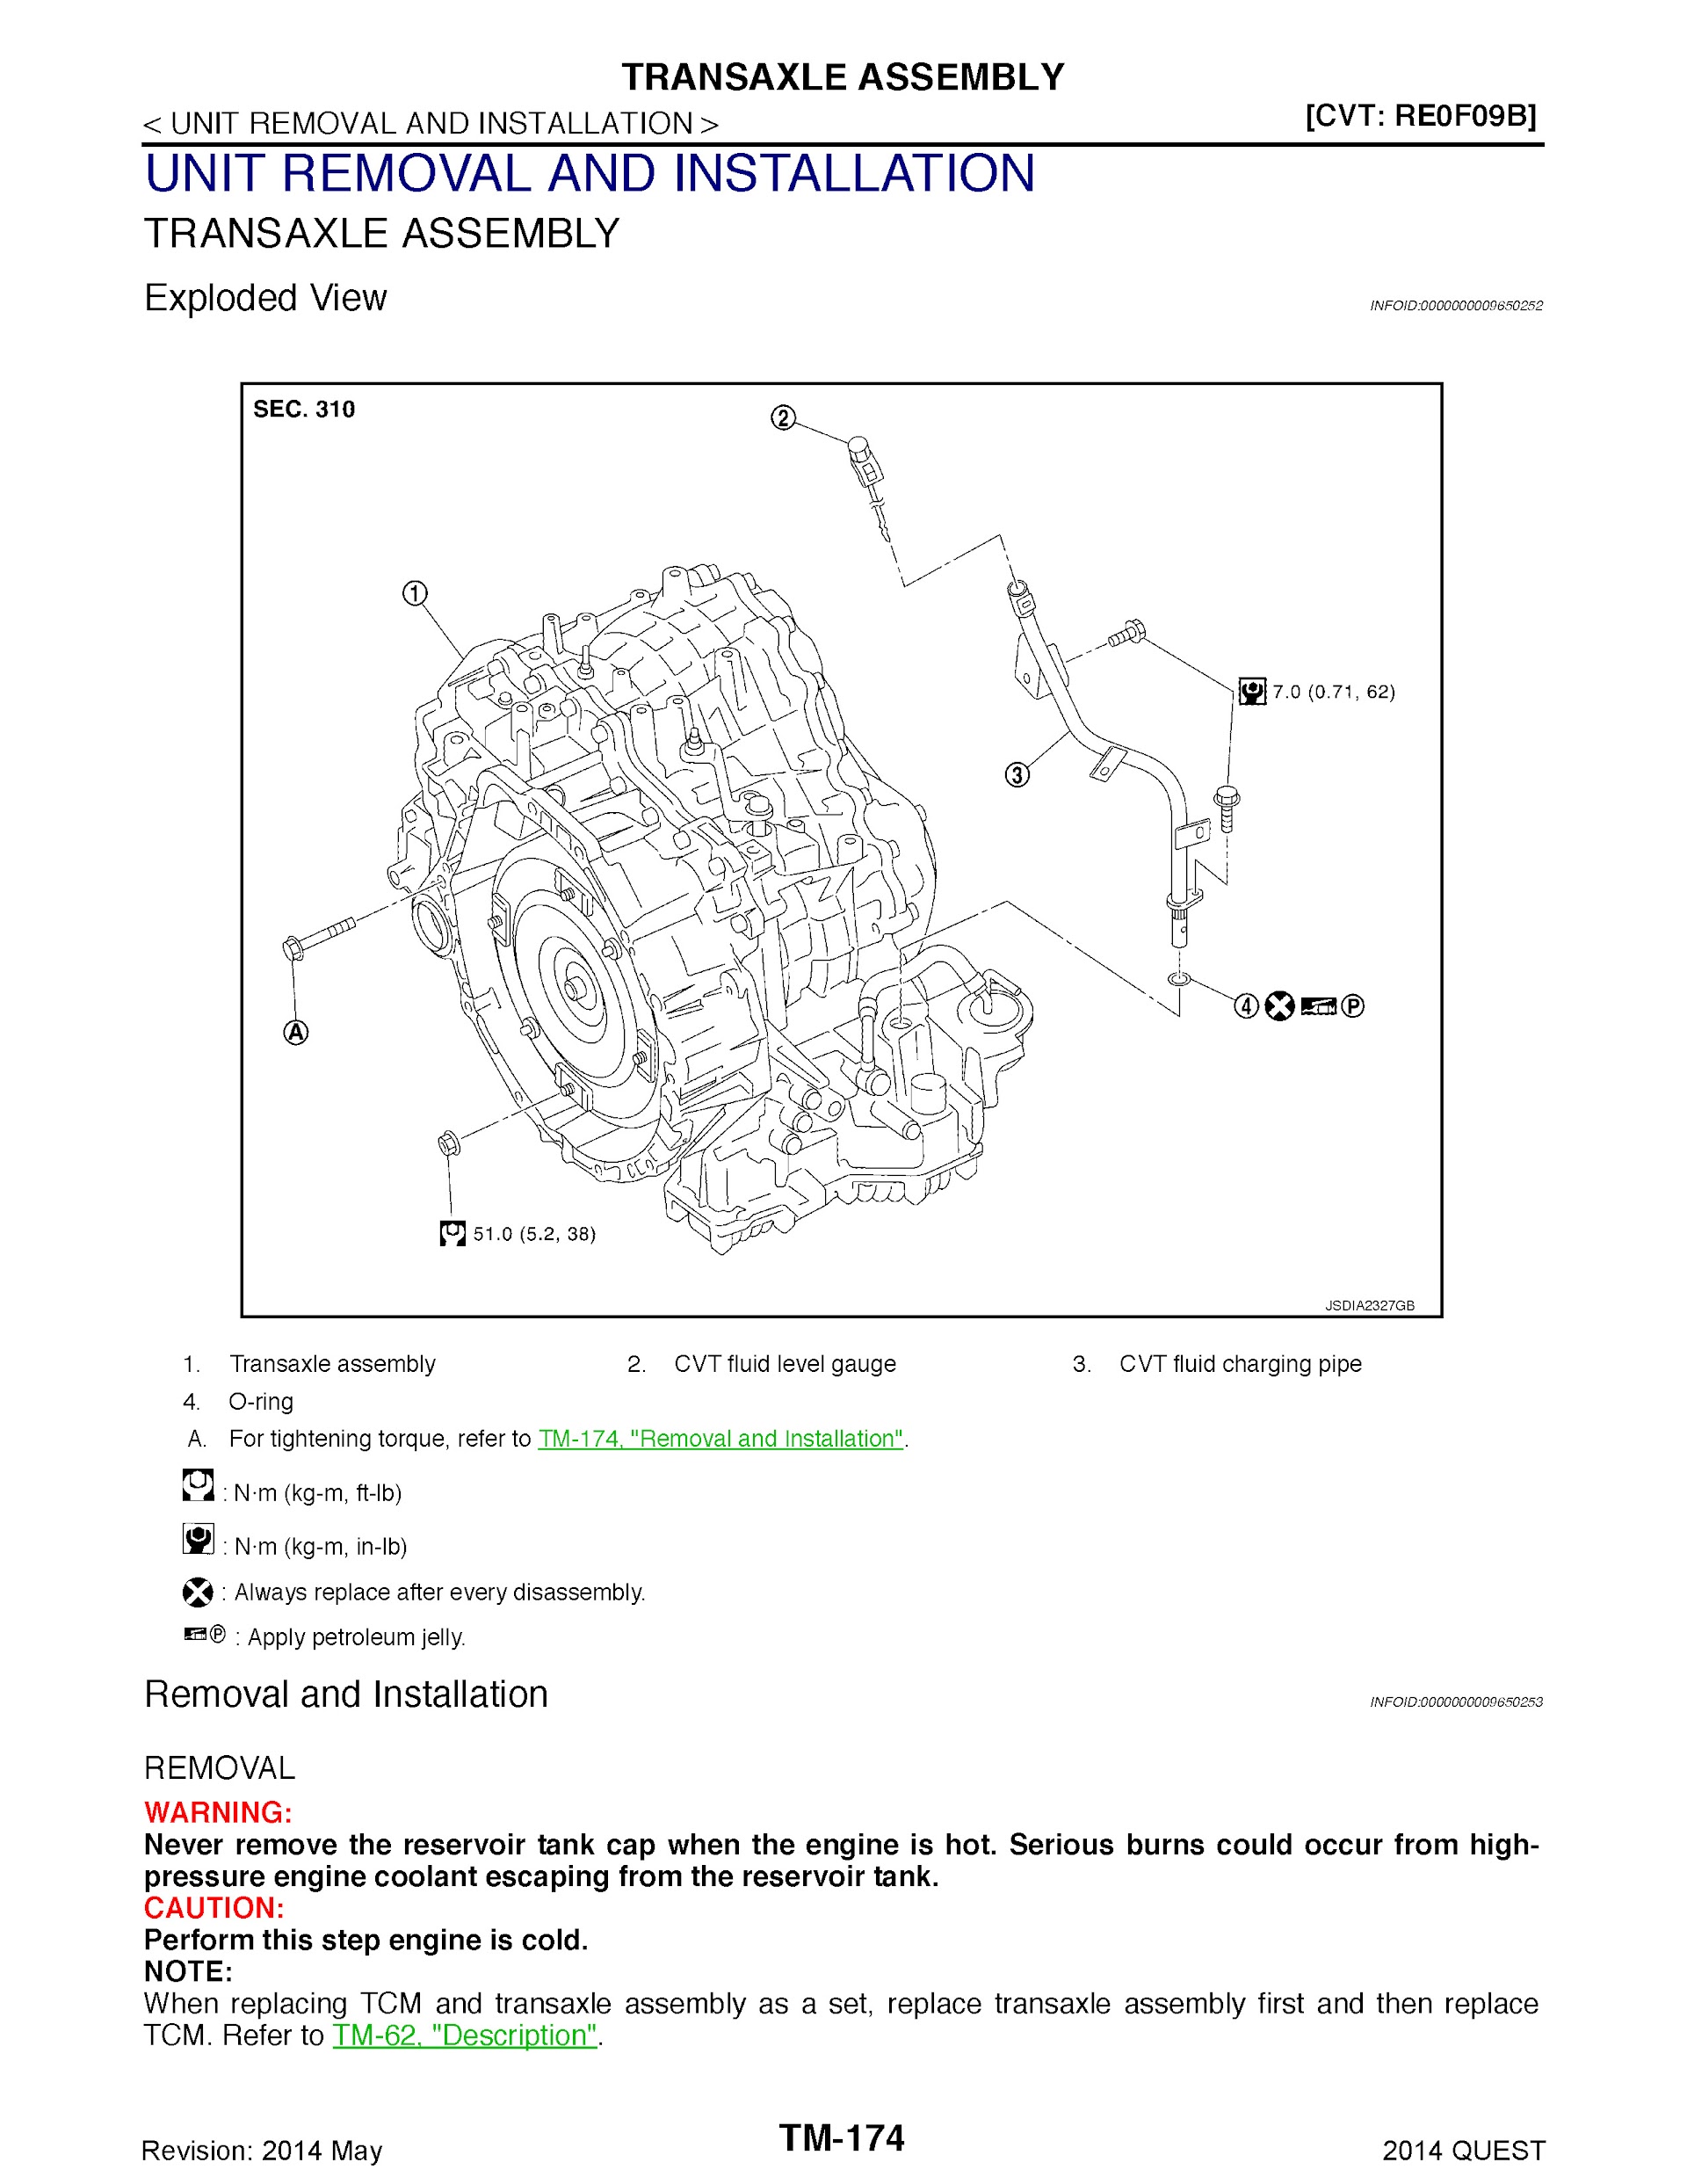 Download 2014 Nissan Quest Repair Manual.